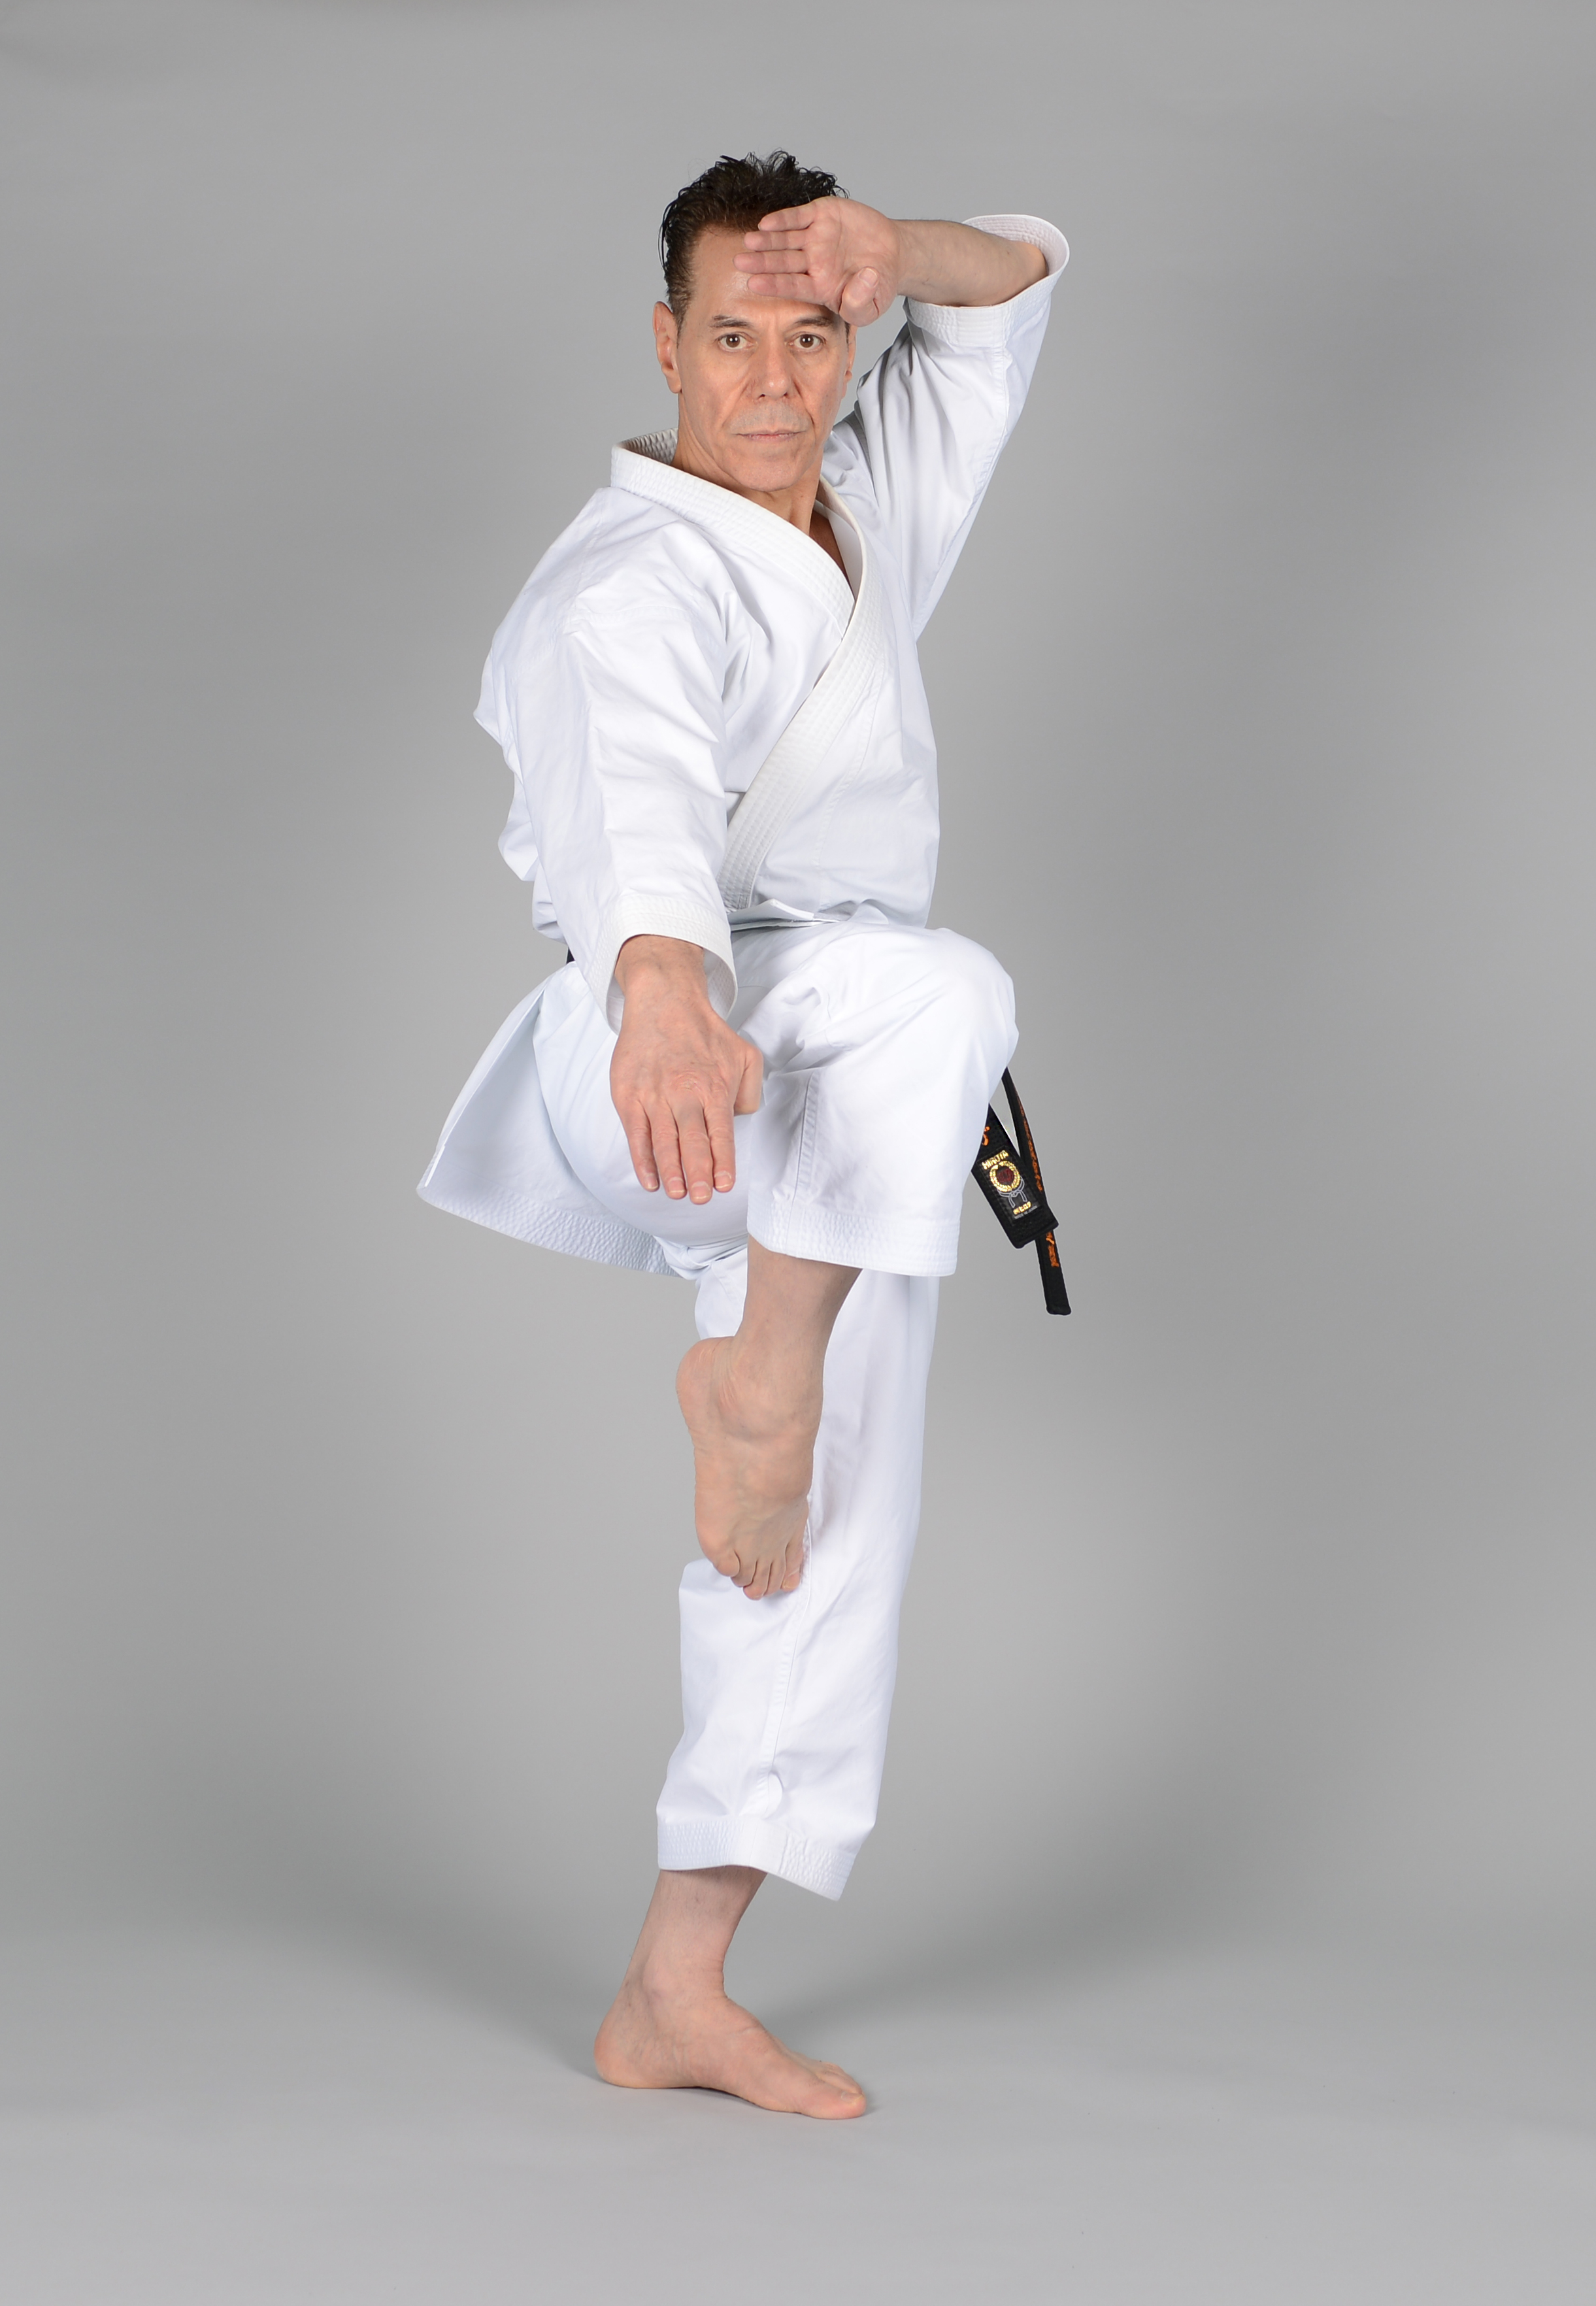 Rohai - Sensei Tanzadeh Shitoryu Karate 8th Dan, Kyoshi